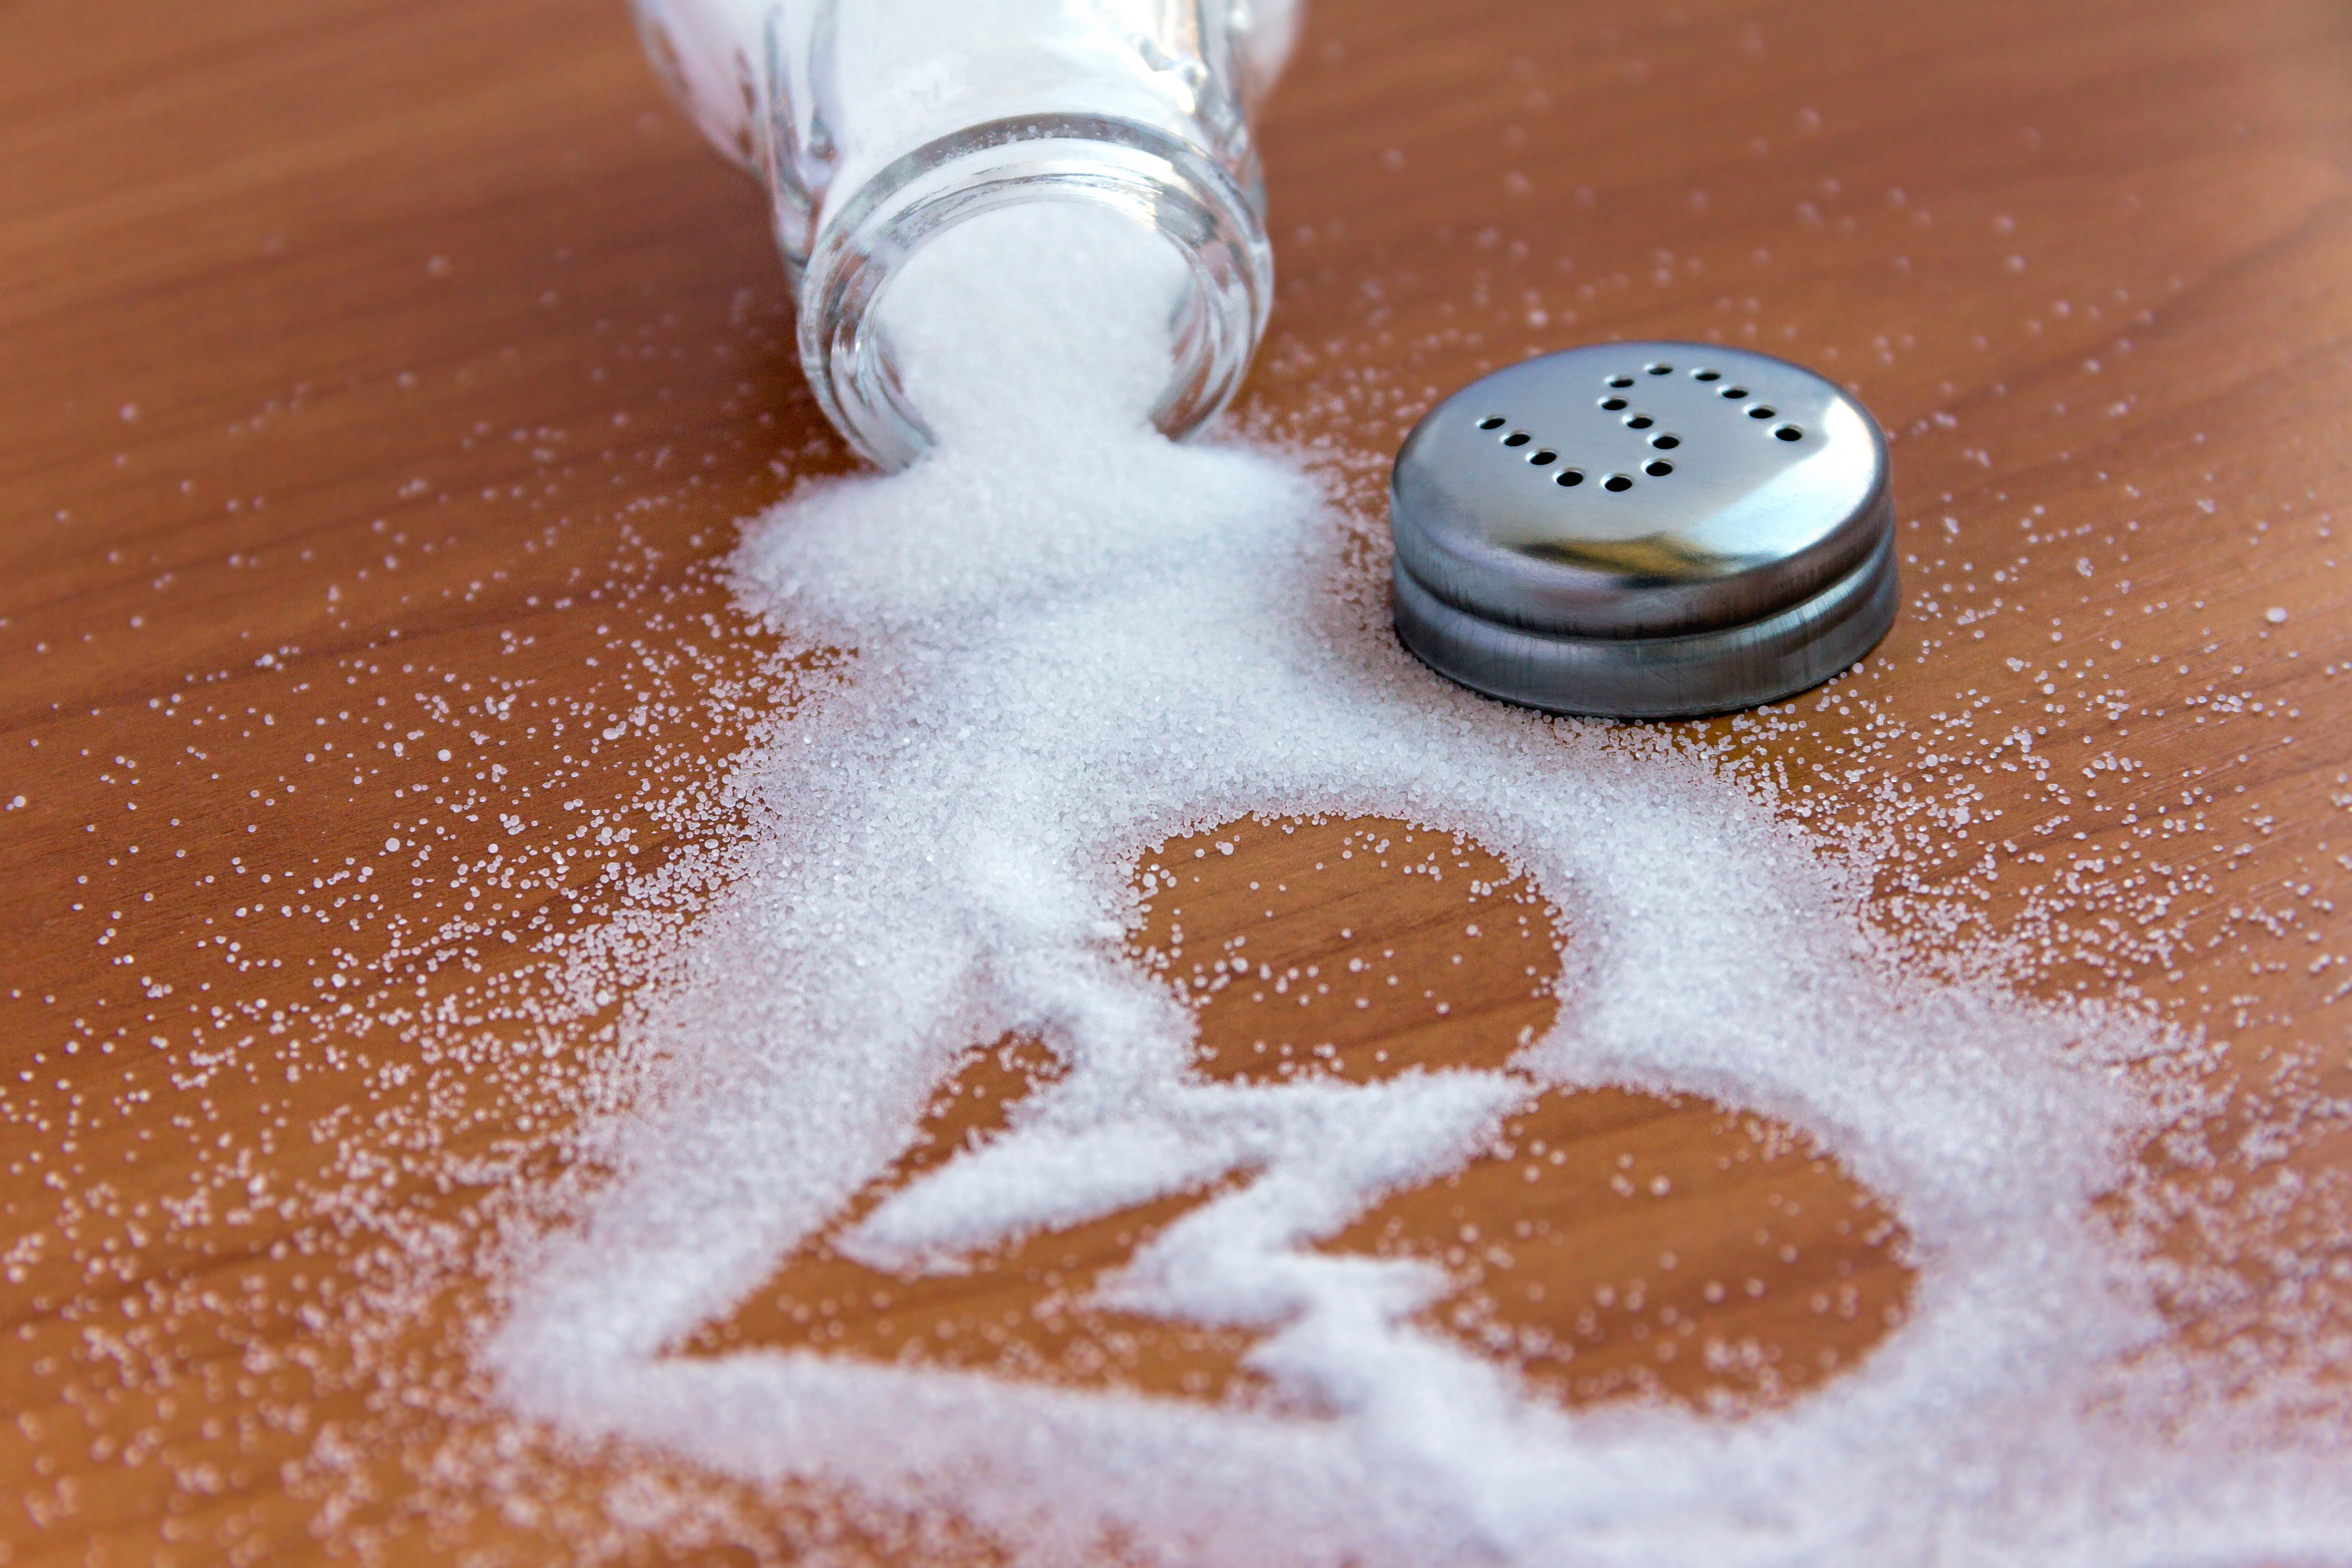 Le sel peut provoquer de l'hypertension. © Sharif, Adobe Stock